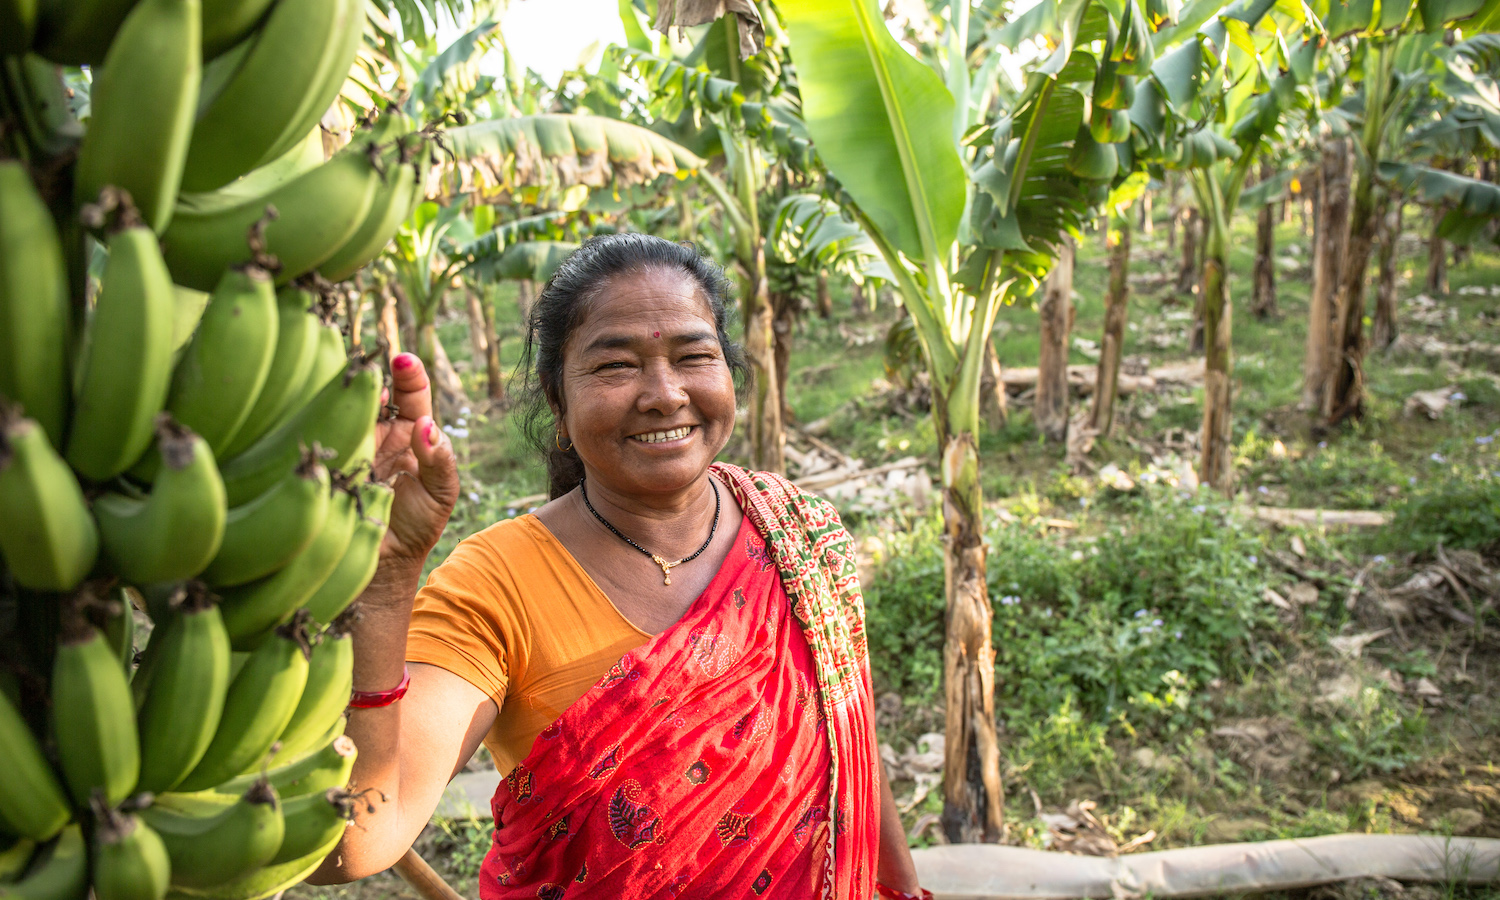 Global Development's Glaring Blind Spot: The Power of Smallholder Women Farmers